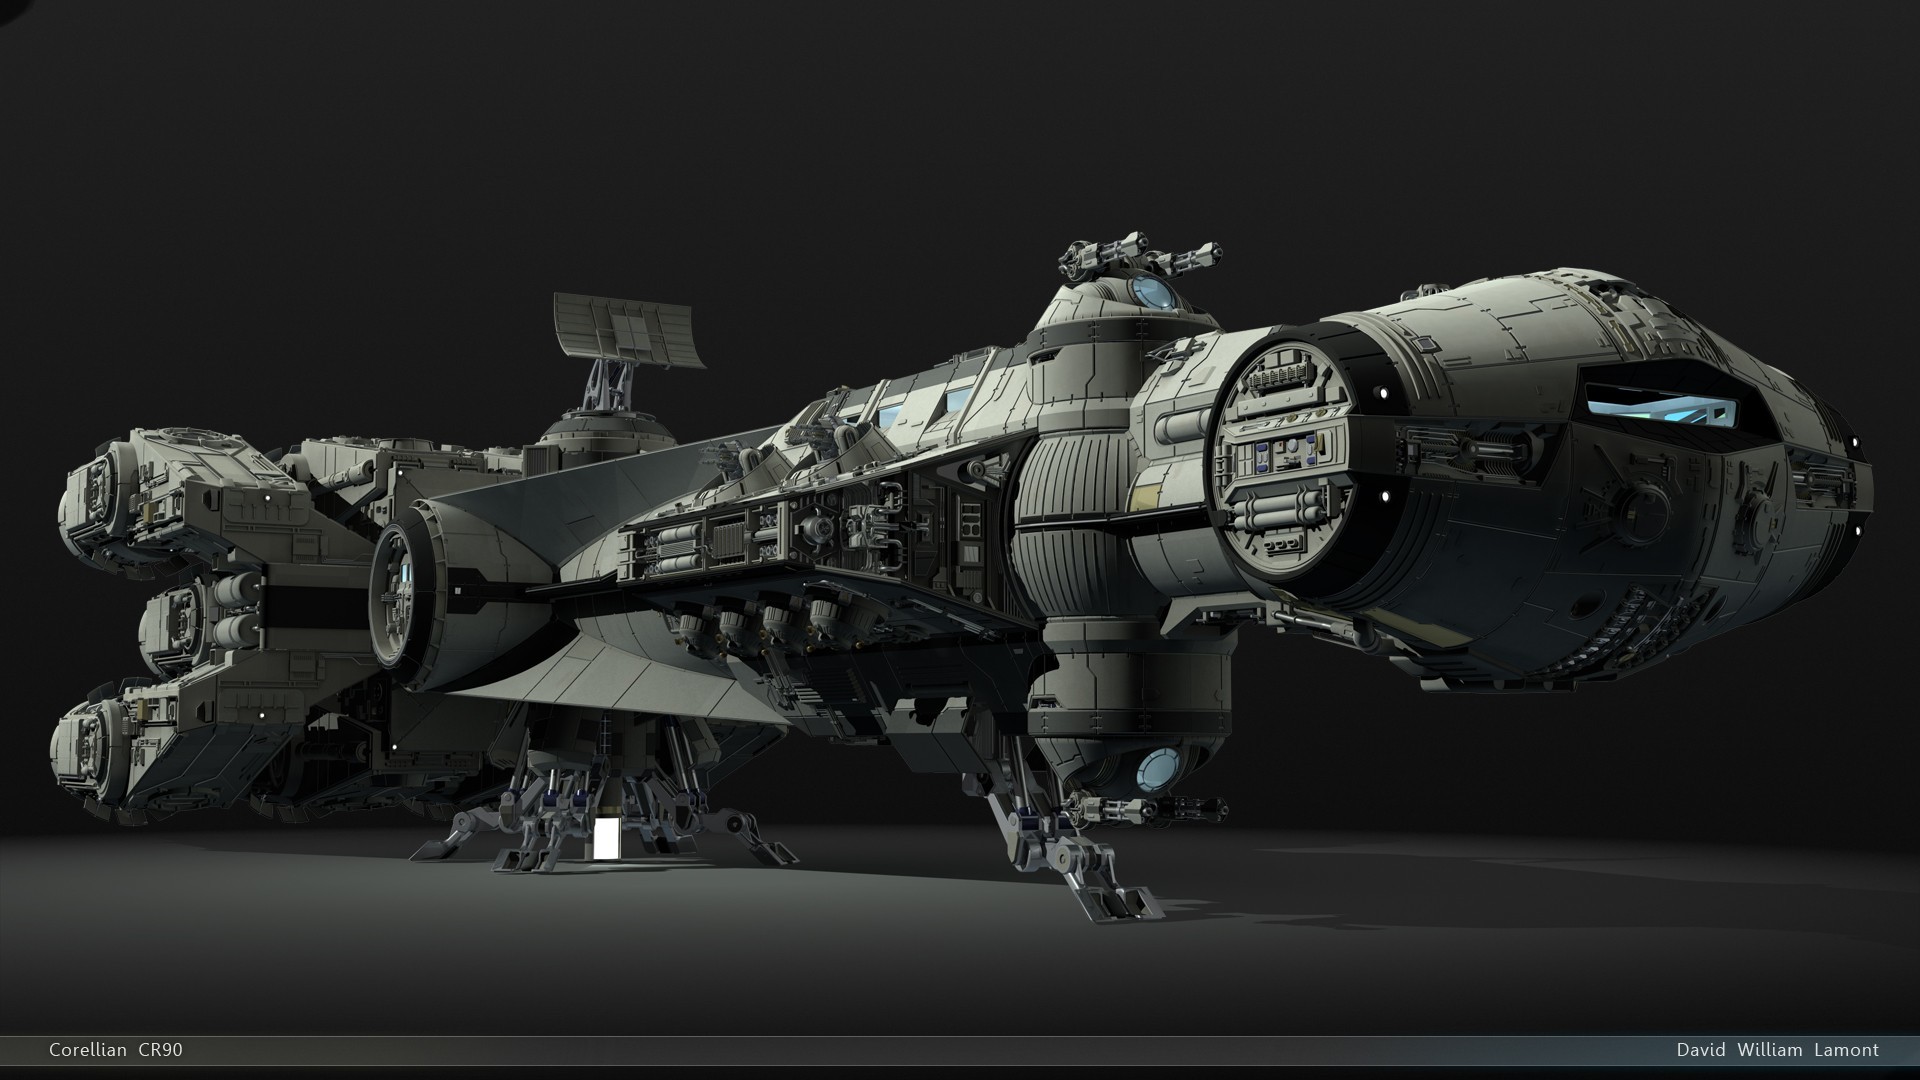 General Star Wars spaceship render CGI artwork simple background digital art 3D Rebel Alliance science